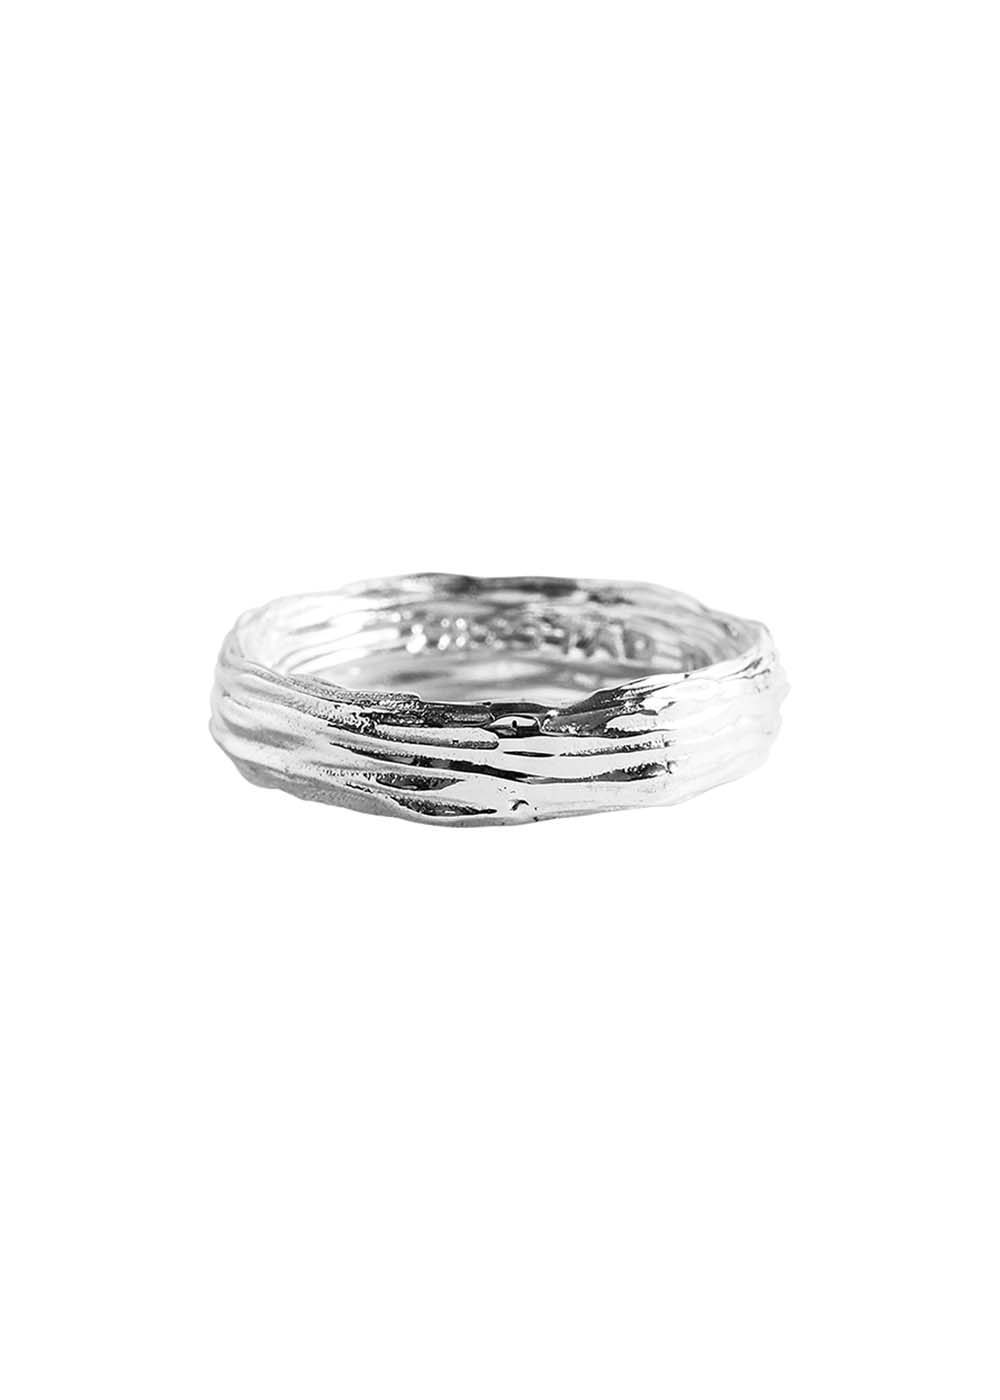 기본트렌드 Hustad #163 Silver wood ring  자체제작 국내 